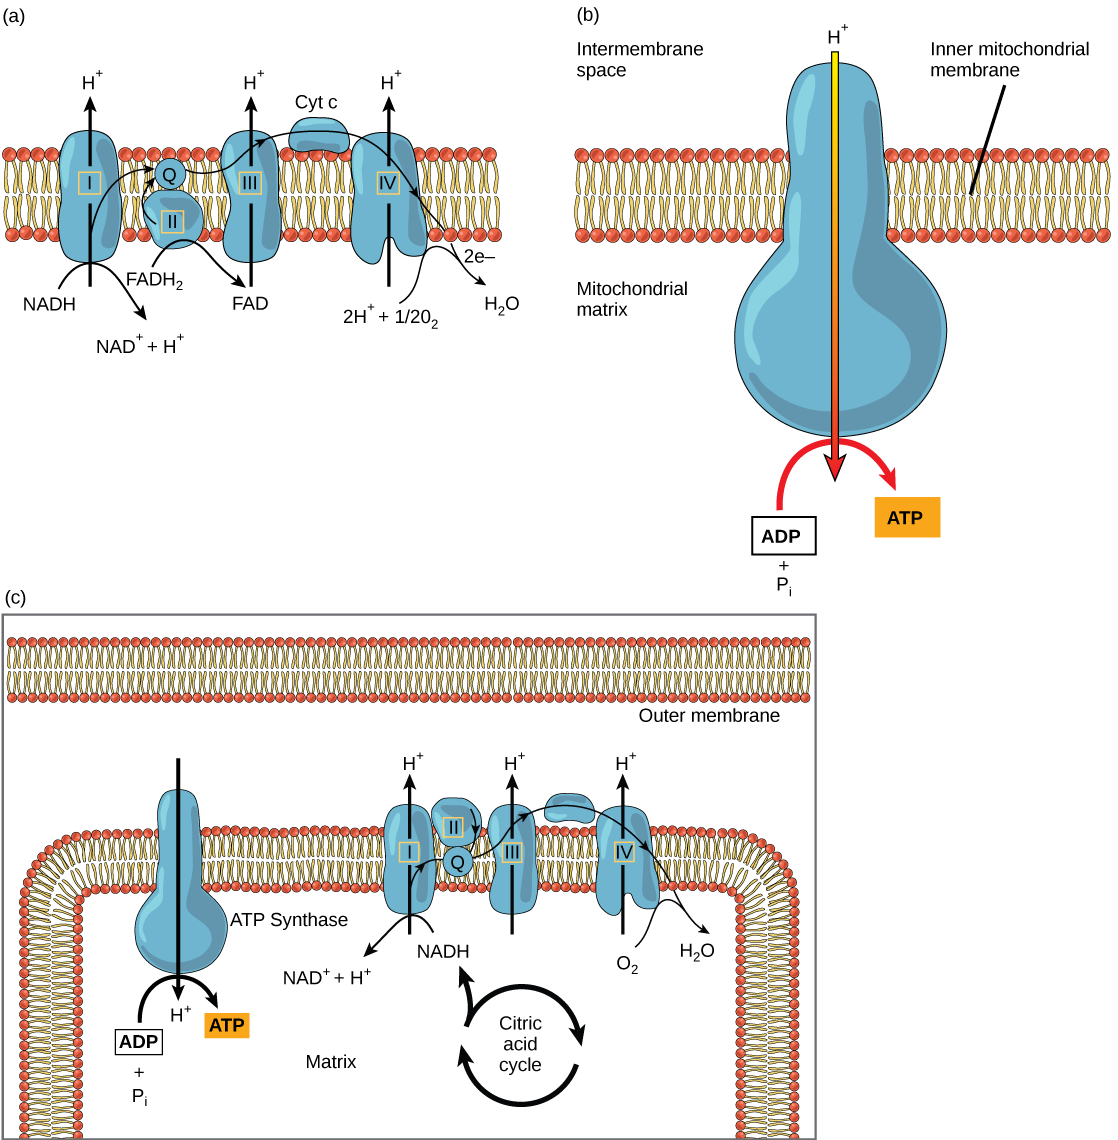 Parte A: Esta ilustración muestra la cadena de transporte de electrones incrustada en la membrana mitocondrial interna. La cadena de transporte de electrones consta de cuatro complejos de electrones. El complejo I oxida NADH a NAD+ y simultáneamente bombea un protón a través de la membrana hacia el espacio intermembrana. Los dos electrones liberados del NADH son transportados a la coenzima Q, luego al complejo III, al citocromo c, al complejo IV, luego al oxígeno molecular. En el proceso, dos protones más se bombean a través de la membrana hacia el espacio intermembrana, y el oxígeno molecular se reduce para formar agua. El complejo II elimina dos electrones del FADH2, formando así FAD. Los electrones se transportan a la coenzima Q, luego al complejo III, al citocromo c, al complejo I y al oxígeno molecular como en el caso de la oxidación del NADH. Parte b: Esta ilustración muestra una enzima ATP sintasa incrustada en la membrana mitocondrial interna. La ATP sintasa permite que los protones se muevan de un área de alta concentración en el espacio intermembrana a un área de baja concentración en la matriz mitocondrial. La energía derivada de este proceso exergónico se utiliza para sintetizar ATP a partir de ADP y fosfato inorgánico. Parte c: Esta ilustración muestra la cadena de transporte de electrones y la enzima ATP sintasa incrustada en la membrana mitocondrial interna, y el ciclo del ácido cítrico en la matriz mitocondrial. El ciclo del ácido cítrico alimenta NADH y FADH2 a la cadena de transporte de electrones. La cadena de transporte de electrones oxida estos sustratos y, en el proceso, bombea protones al espacio intermembrana. La ATP sintasa permite que los protones se filtren de nuevo a la matriz y sintetiza ATP.